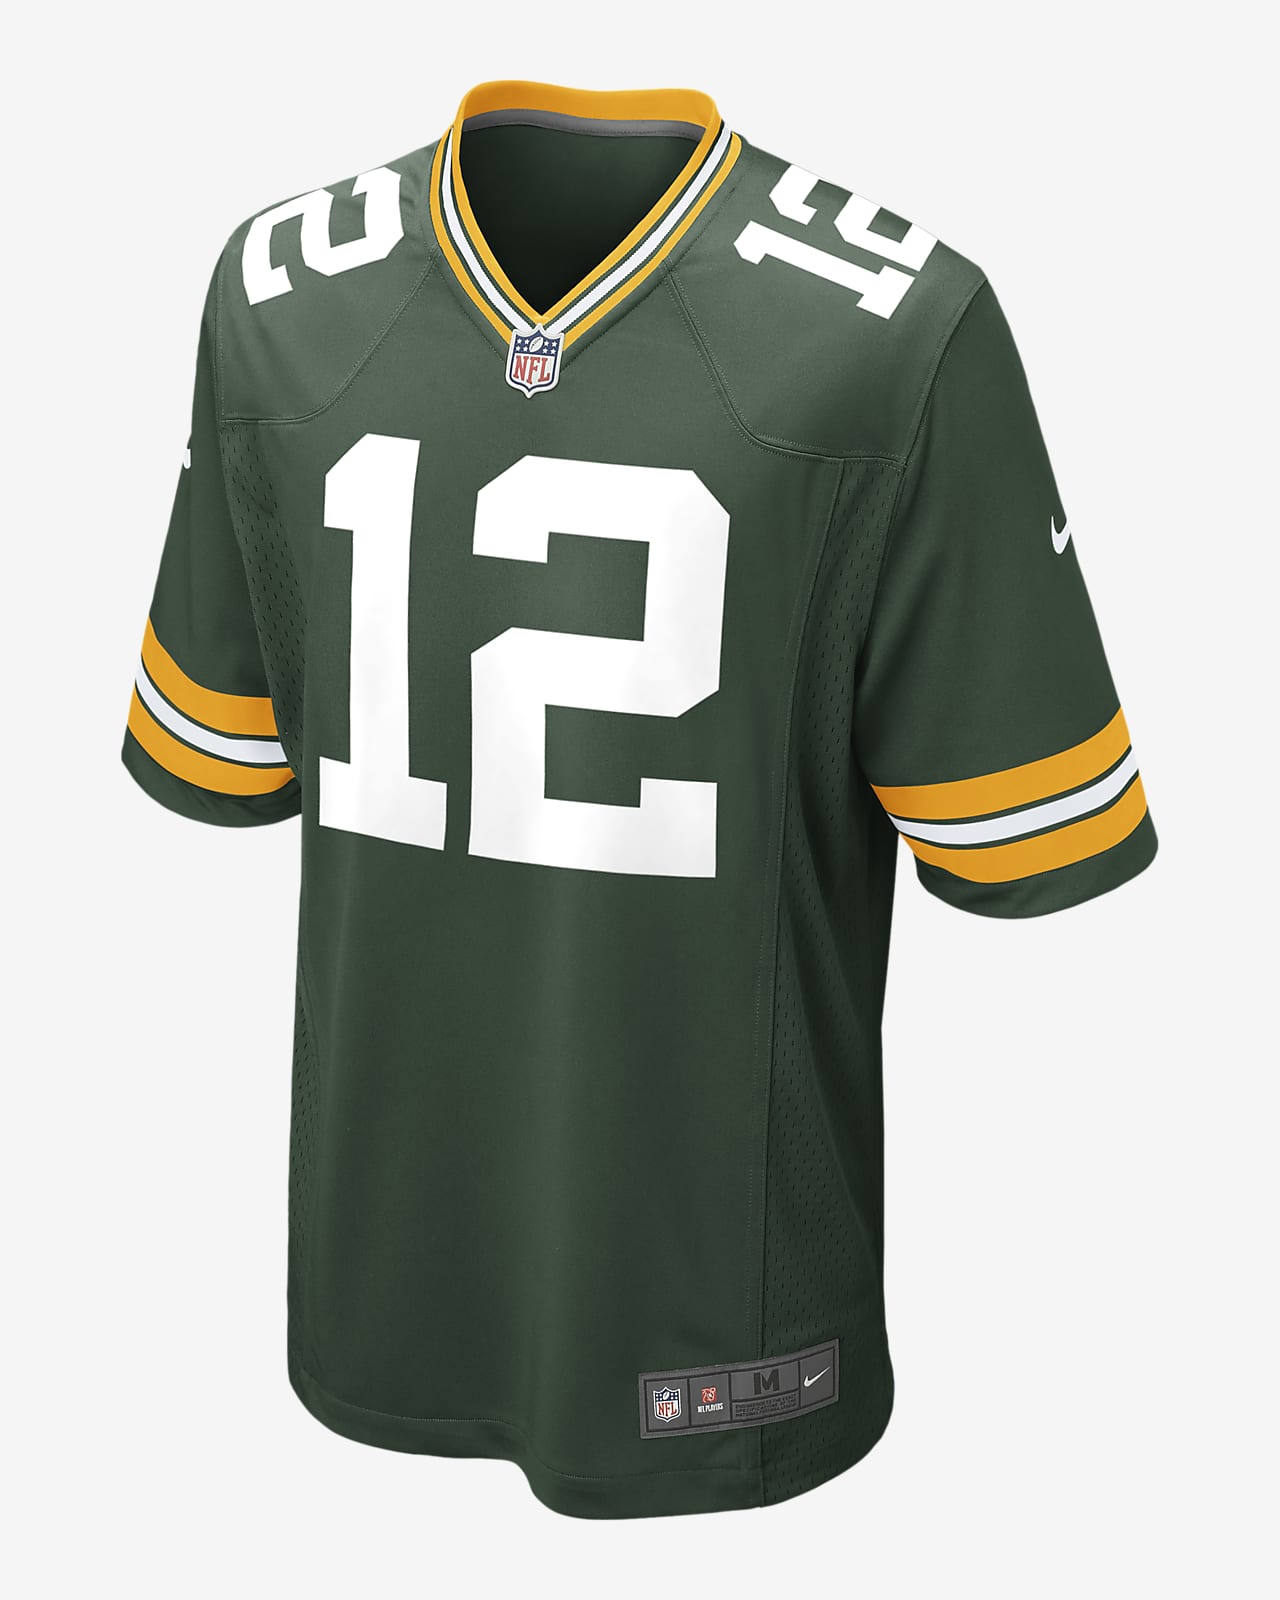 NFL Green Bay Packers (Aaron Rodgers) American-Football-Trikot für Herren